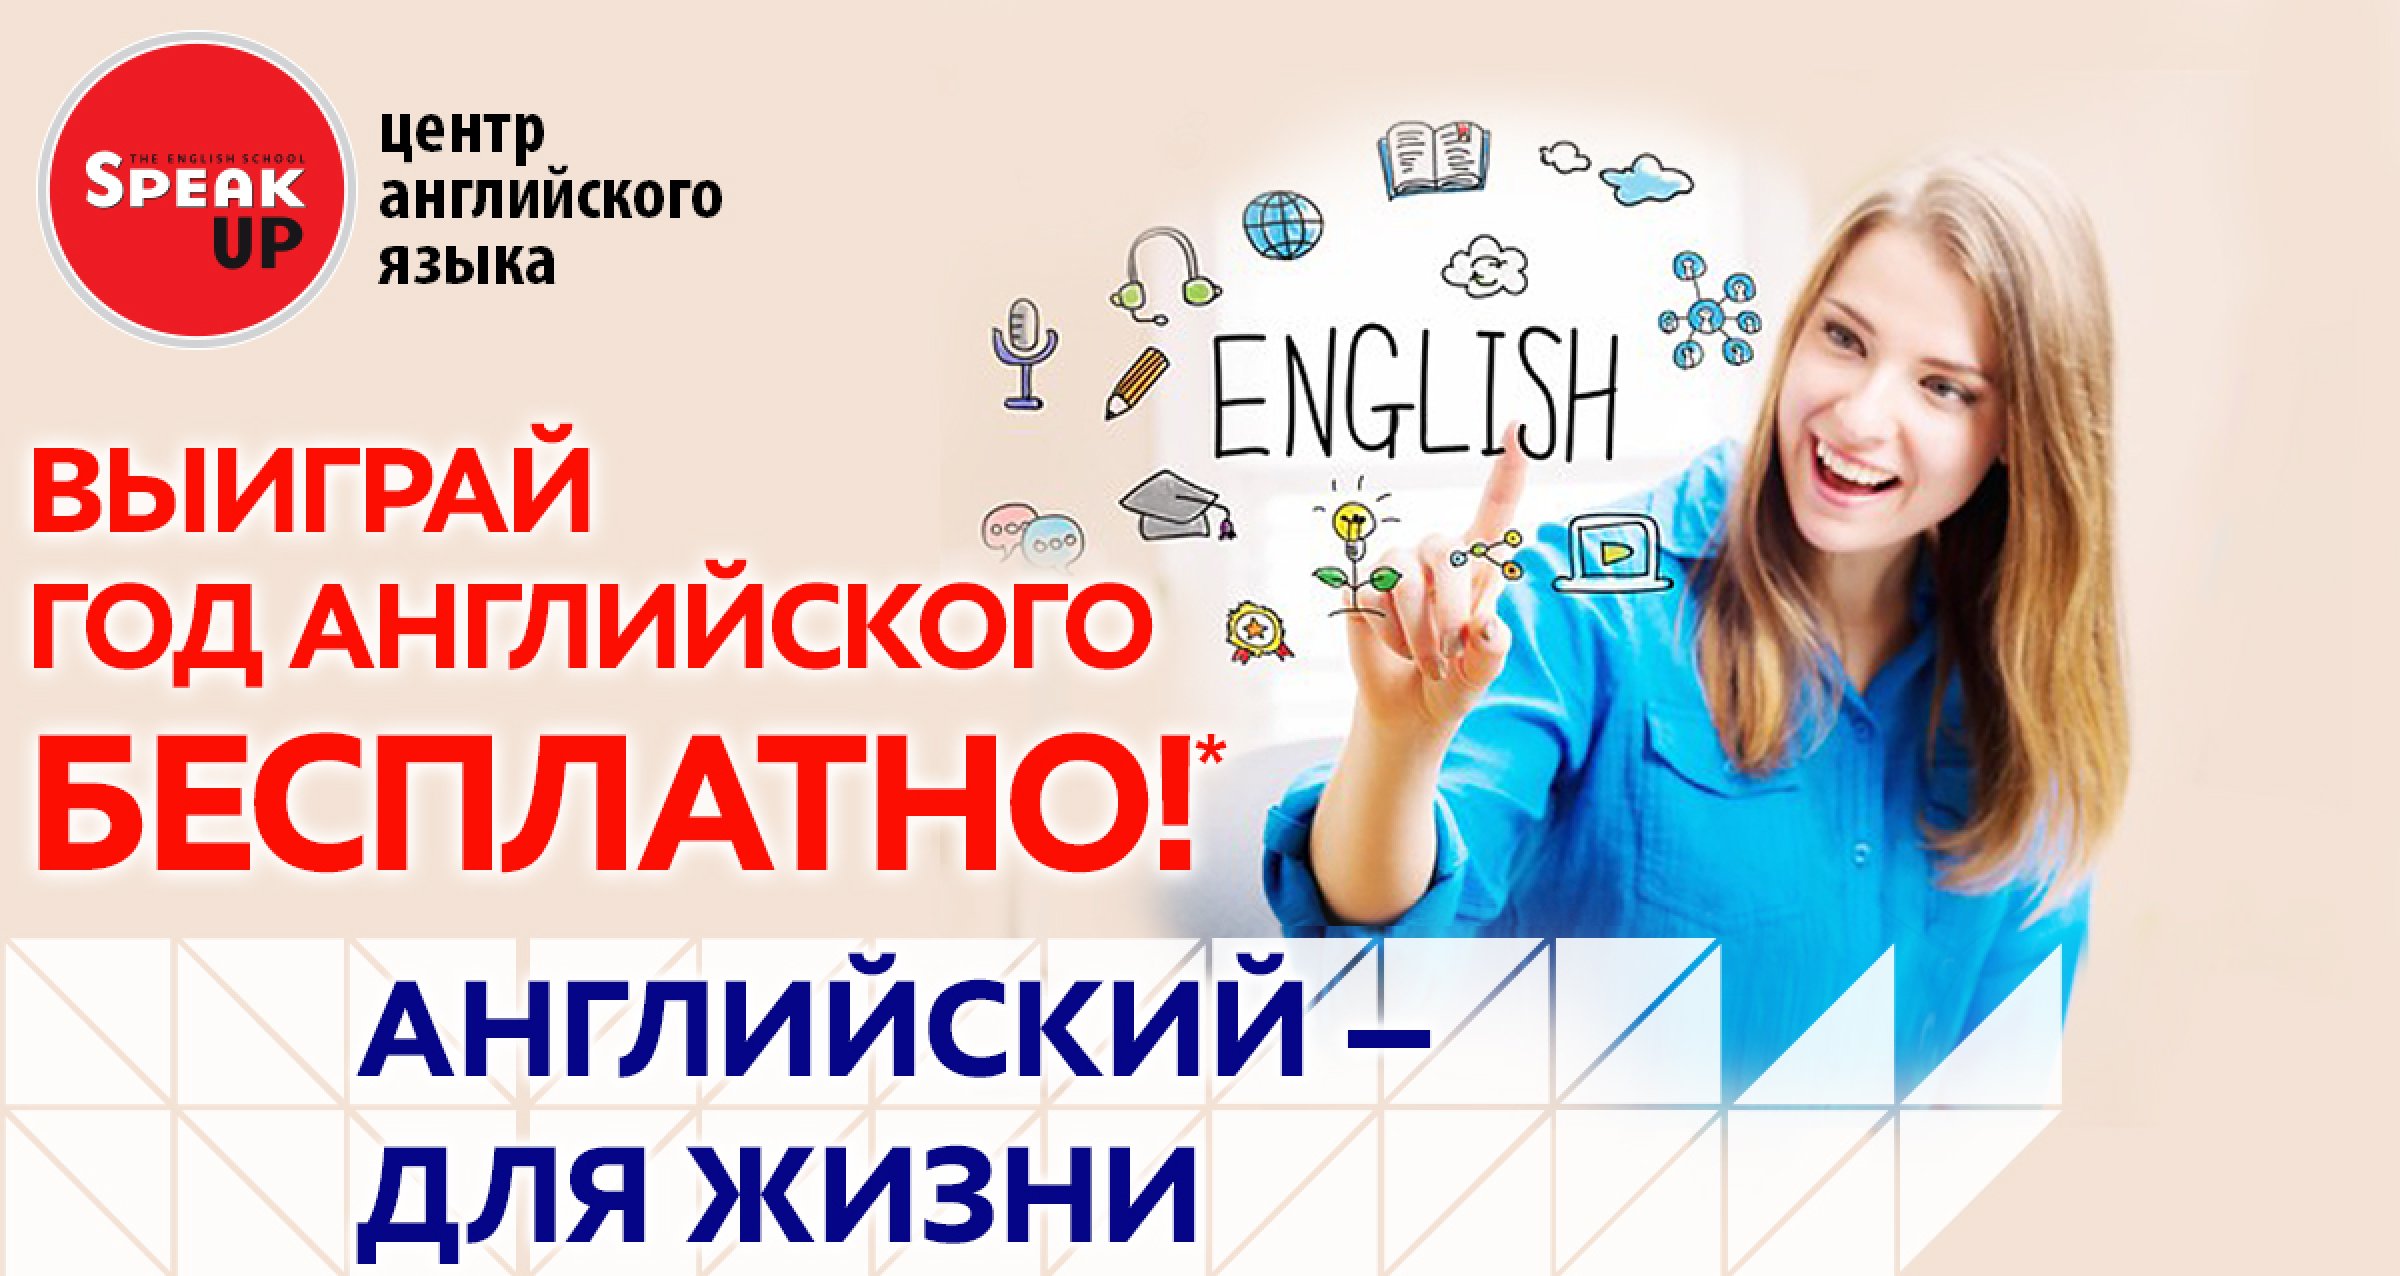 Какой курс на английском. Реклама изучения английского языка. Реклама курсов английского. Курсы английского языка реклама.